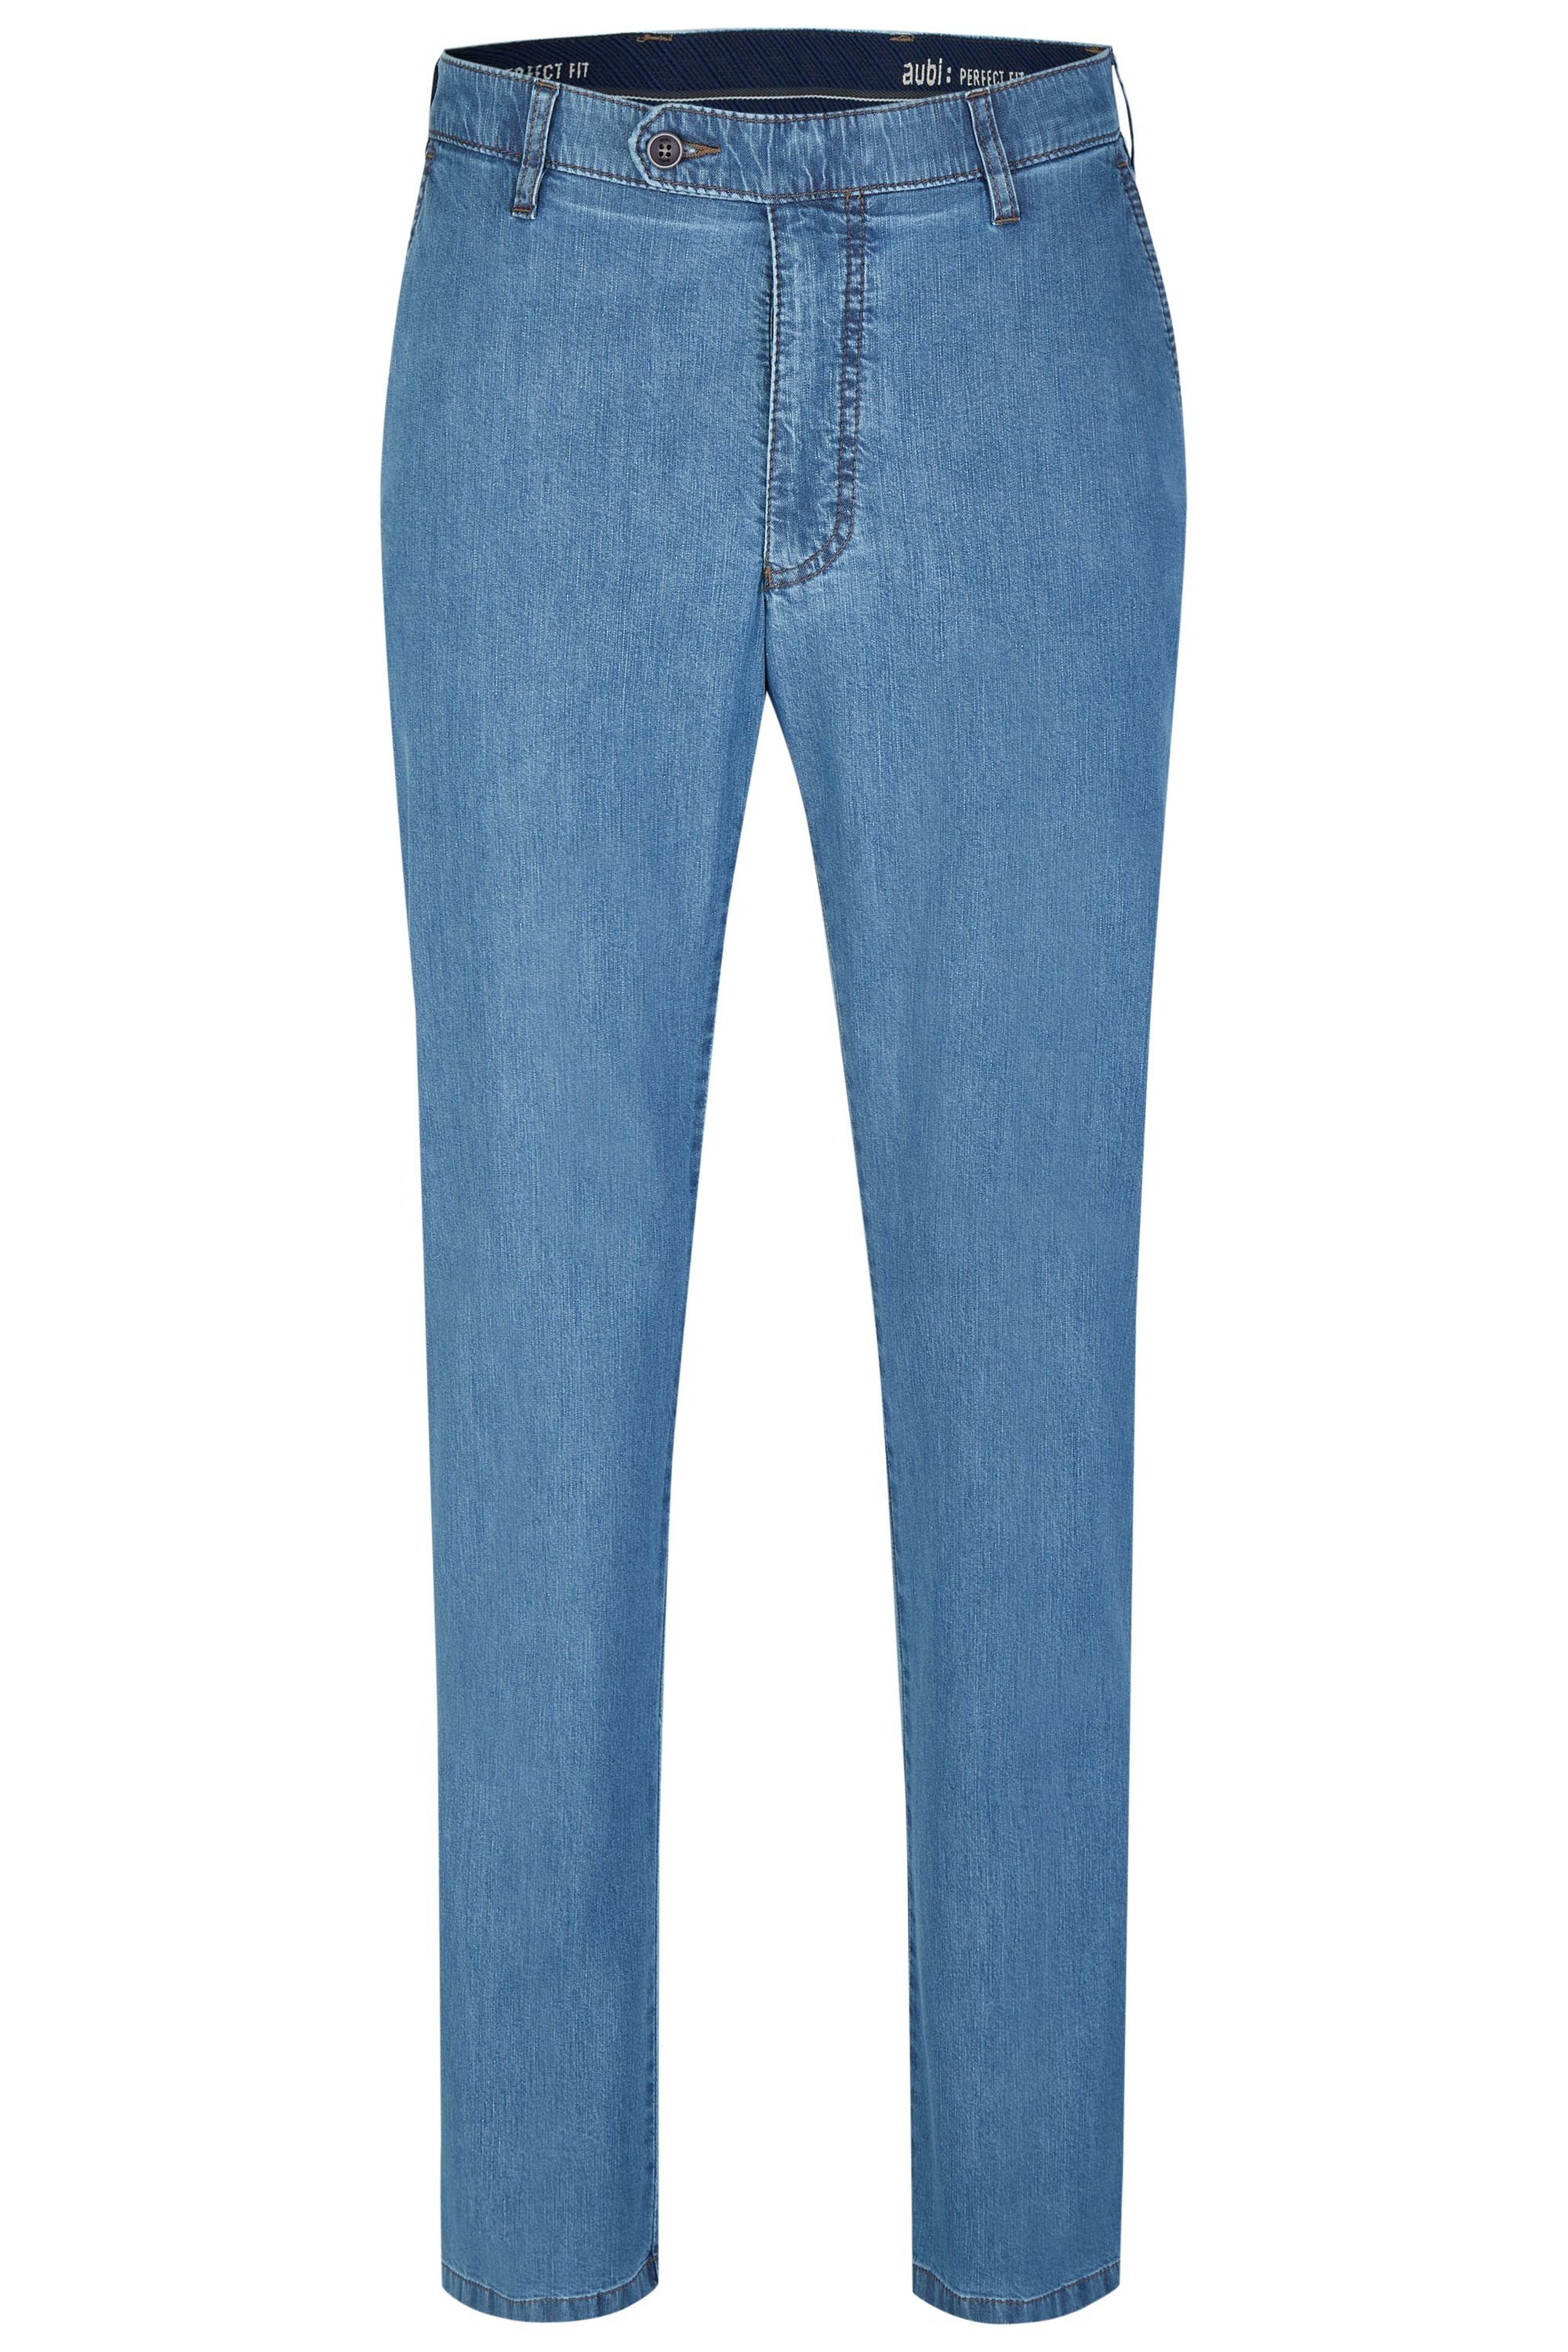 Stretch (43) aus 526 Jeans aubi: bleached Herren Baumwolle Fit Flex Sommer Modell Bequeme Jeans High aubi Perfect Hose